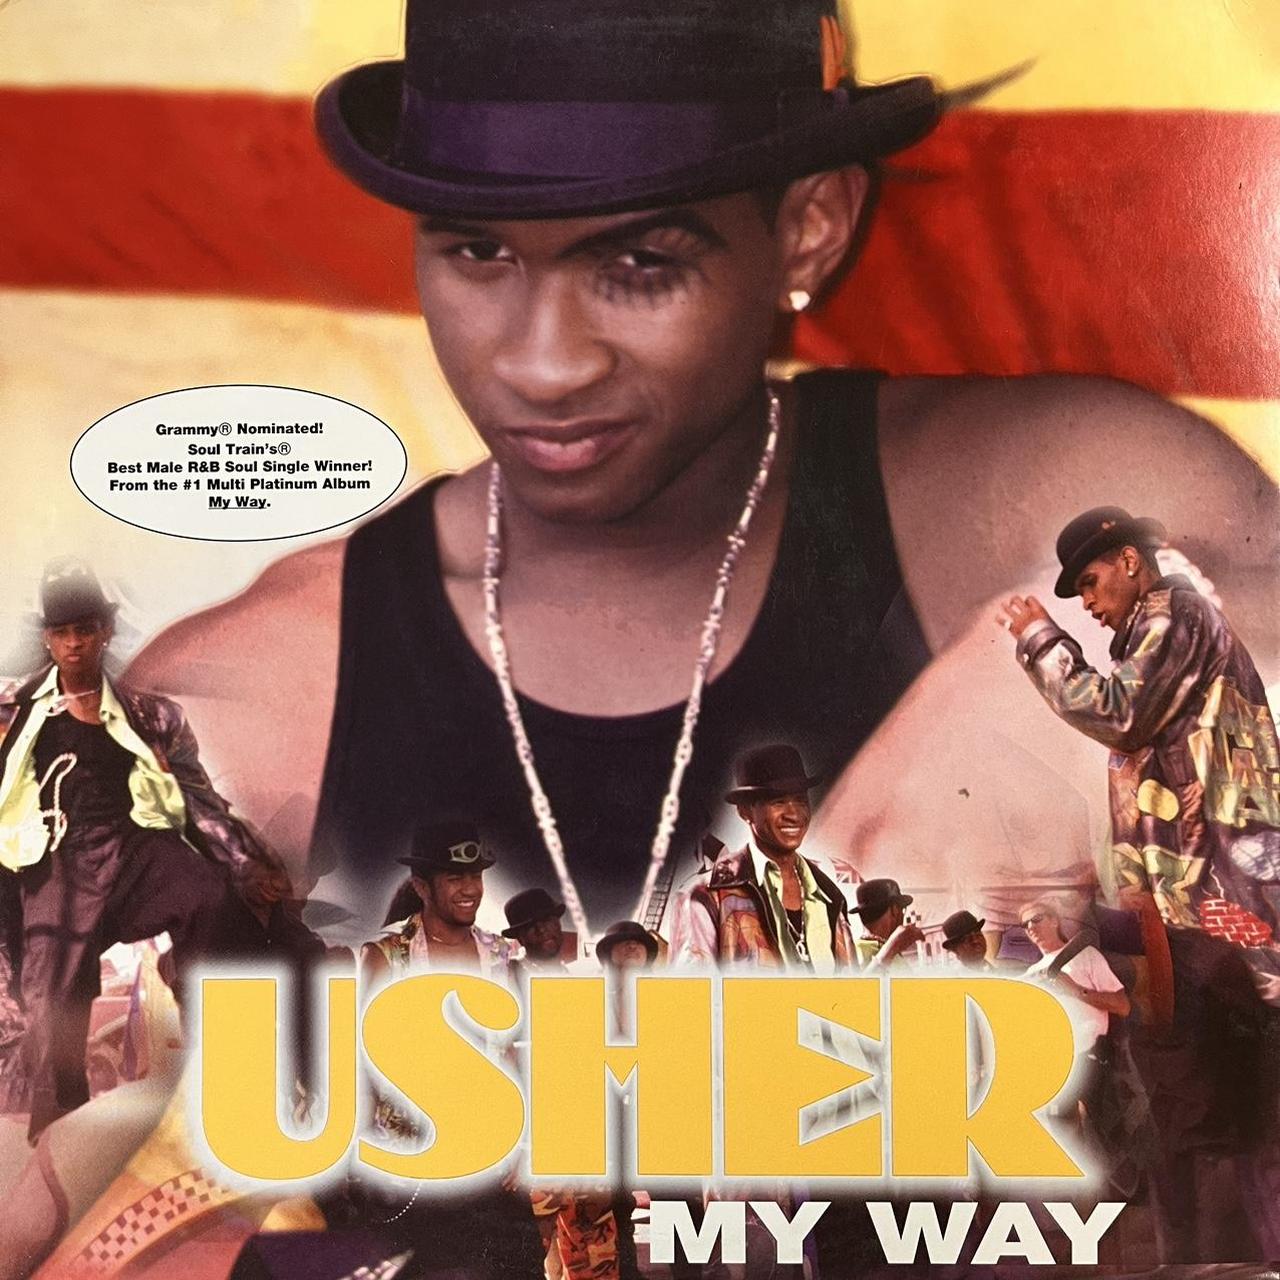 Usher “My Way” 6 Track 12inch Vinyl